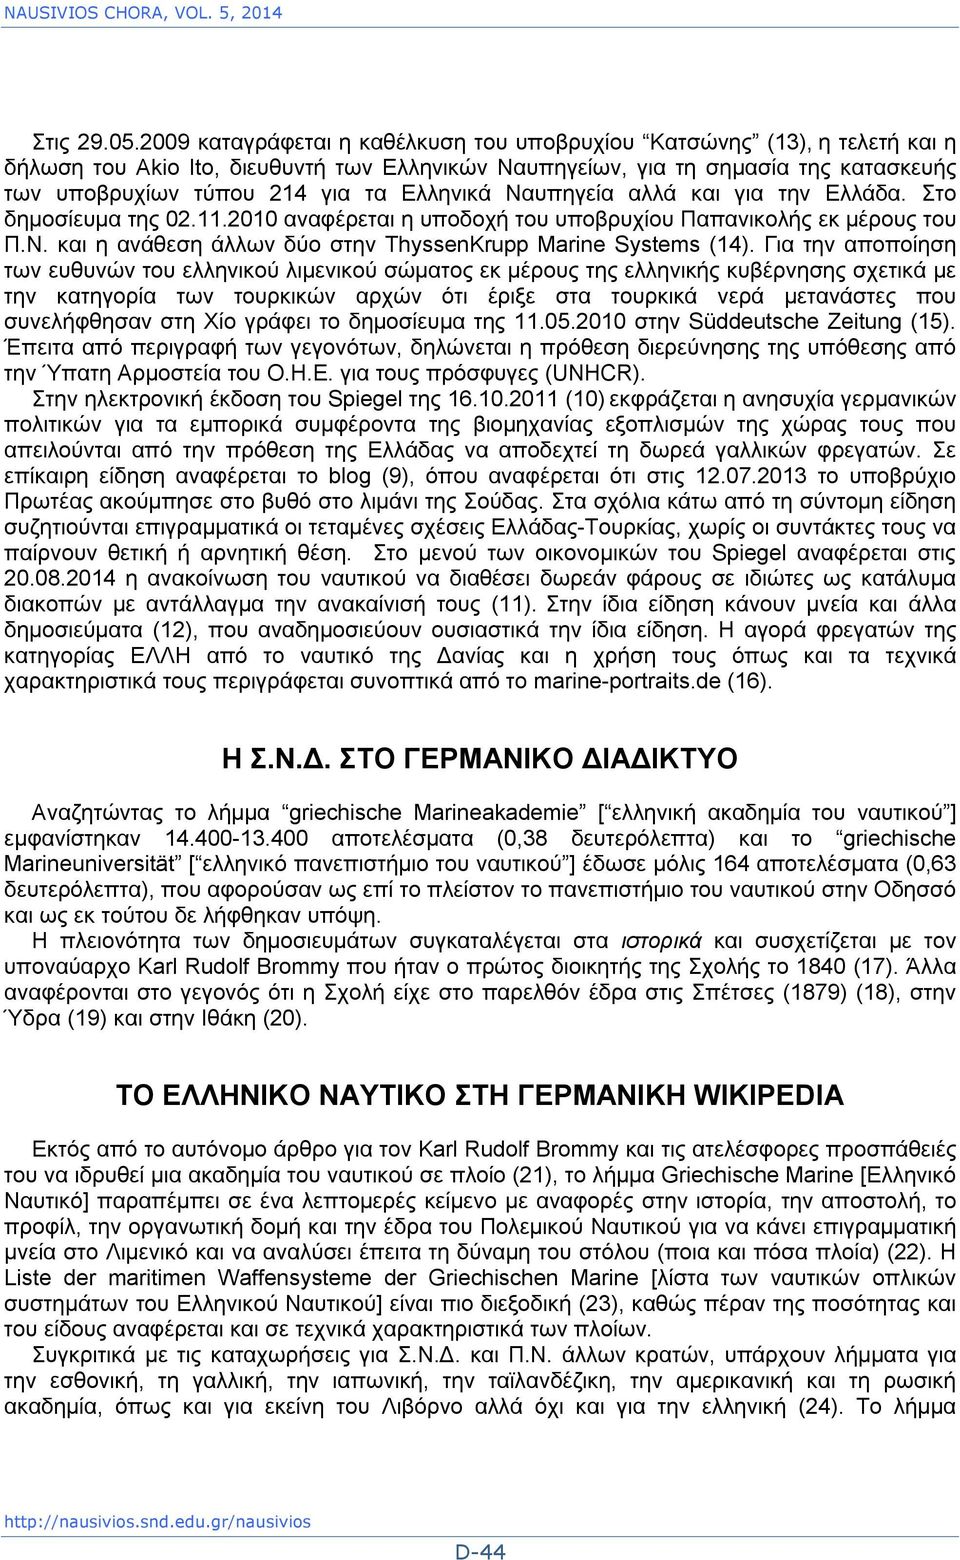 Ελληνικά Ναυπηγεία αλλά και για την Ελλάδα. Στο δημοσίευμα της 02.11.2010 αναφέρεται η υποδοχή του υποβρυχίου Παπανικολής εκ μέρους του Π.Ν. και η ανάθεση άλλων δύο στην ThyssenKrupp Marine Systems (14).